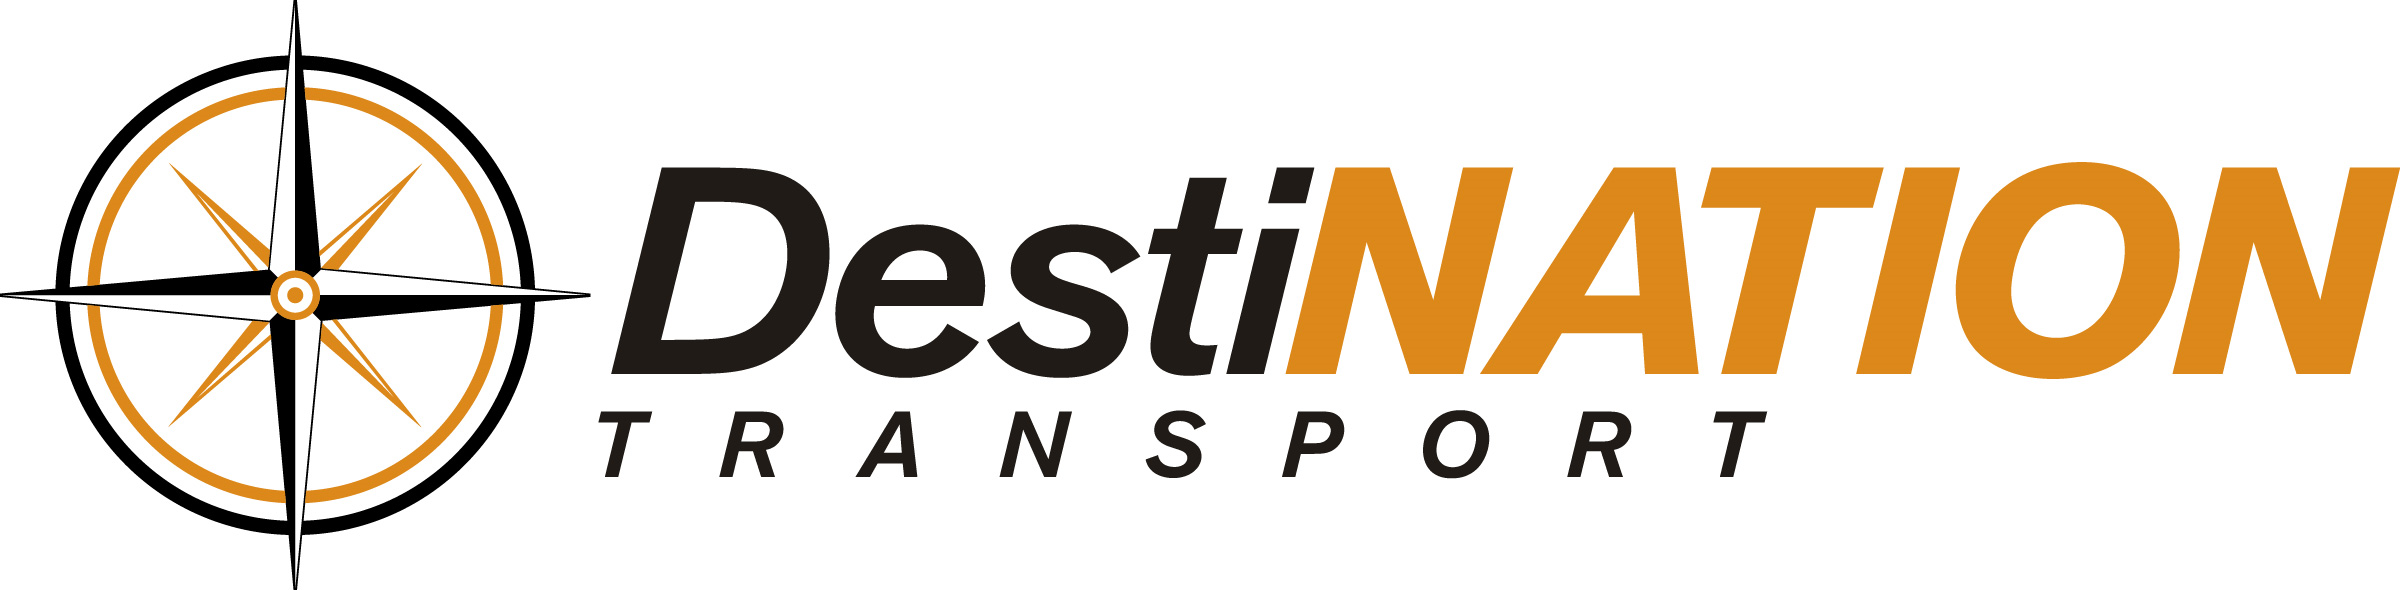 DestiNATION Transport Company Logo